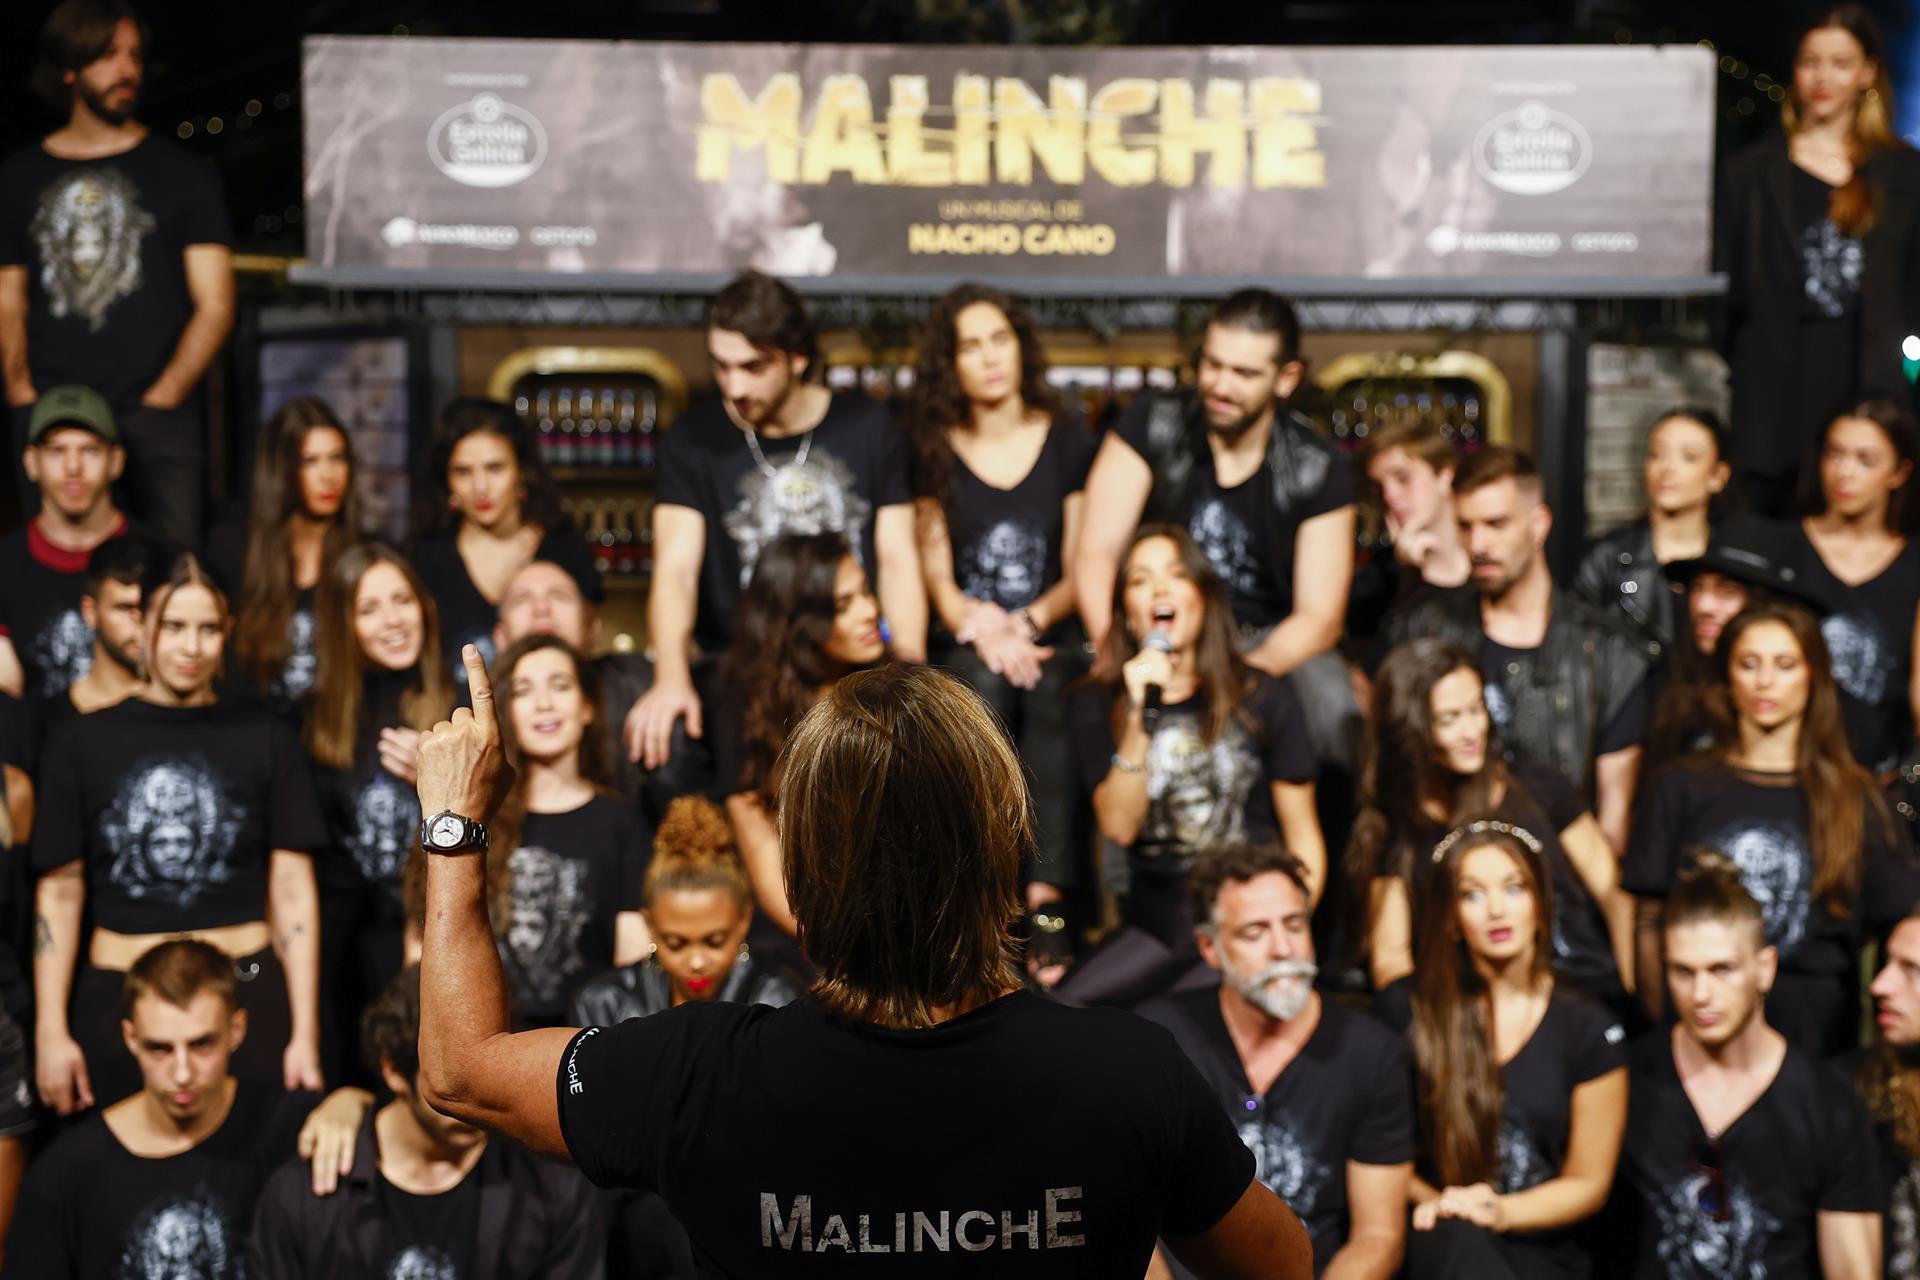 El músico Nacho Cano (de espaldas) dirige al elenco de su nuevo espectáculo, "Malinche", durante la rueda de prensa de su presentación este miércoles en Madrid.
